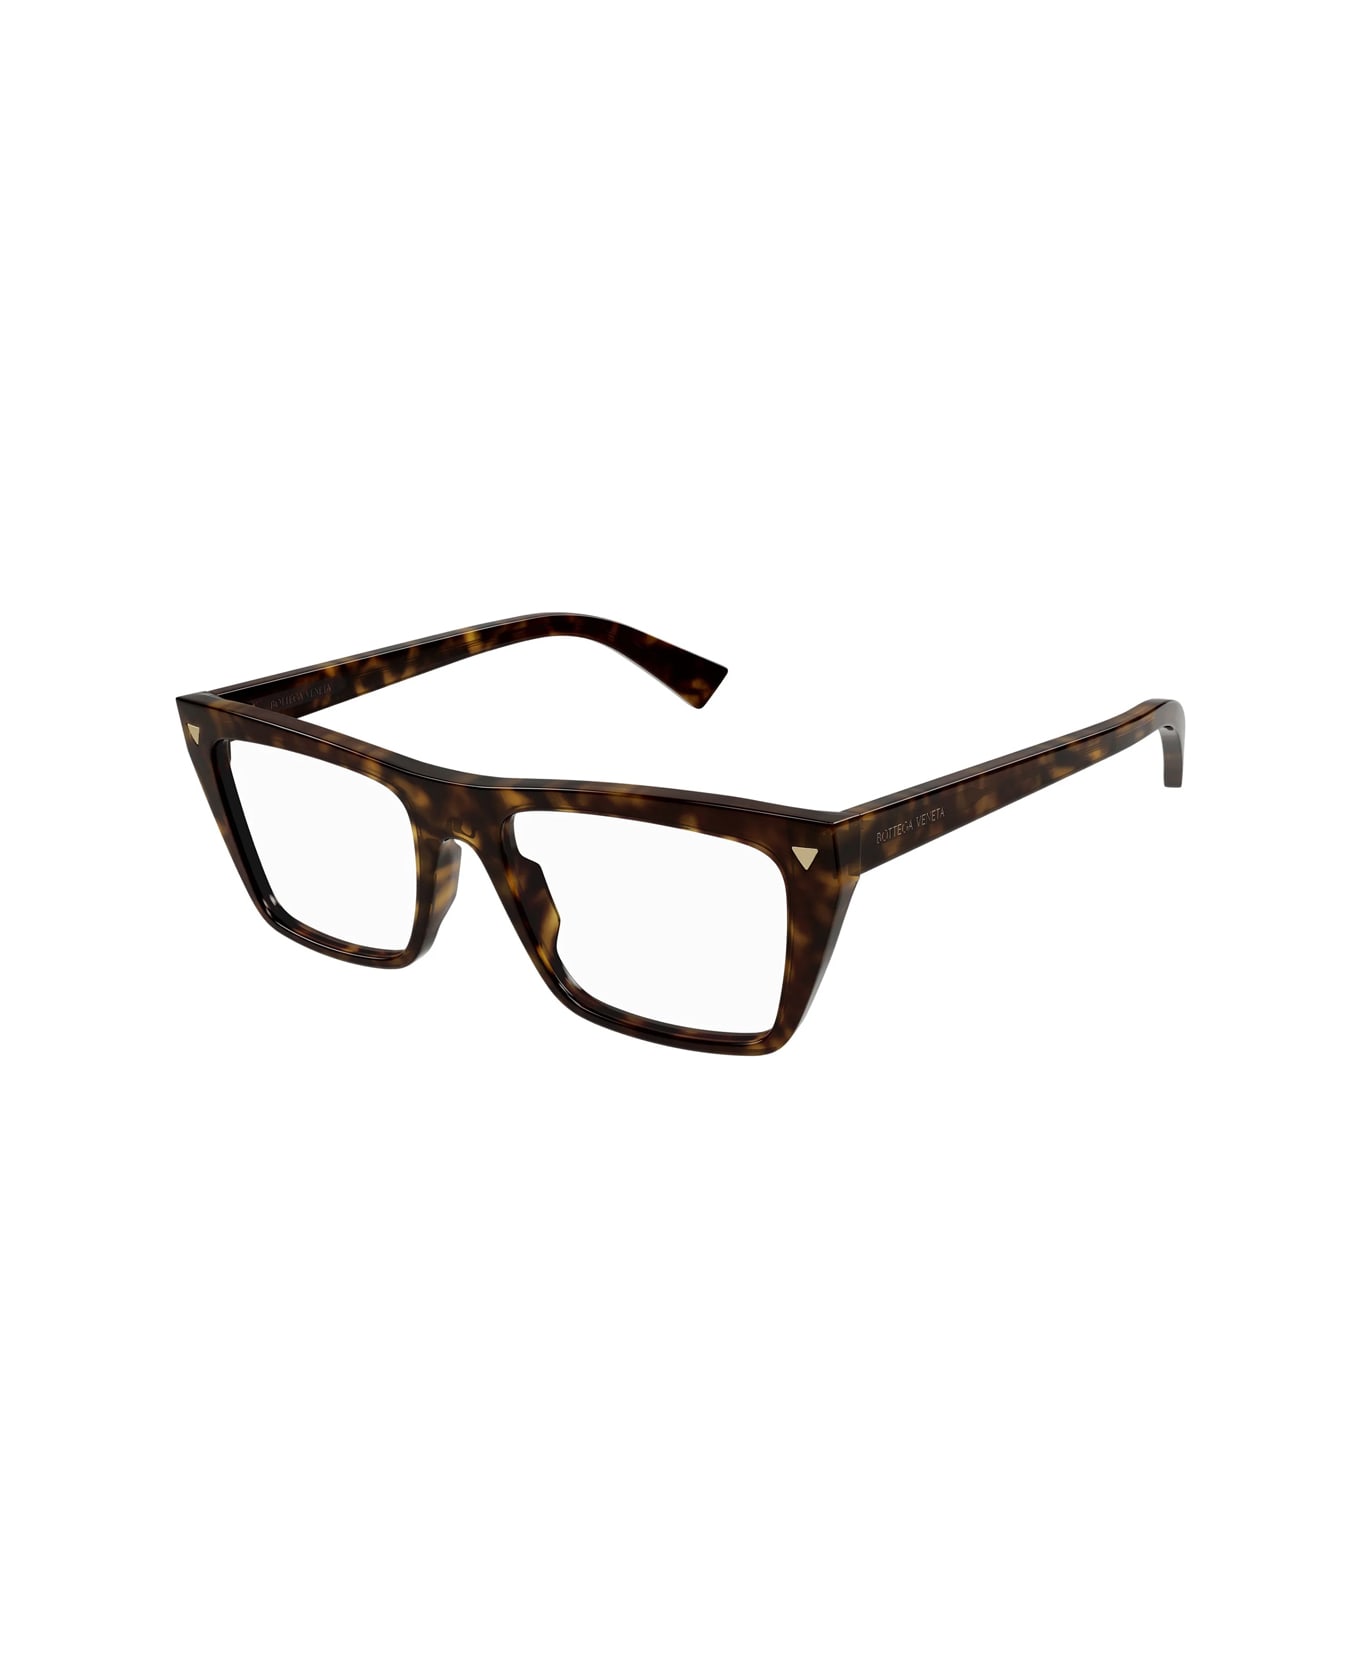 Bottega Veneta Eyewear Bv1258o 002 Glasses - Marrone